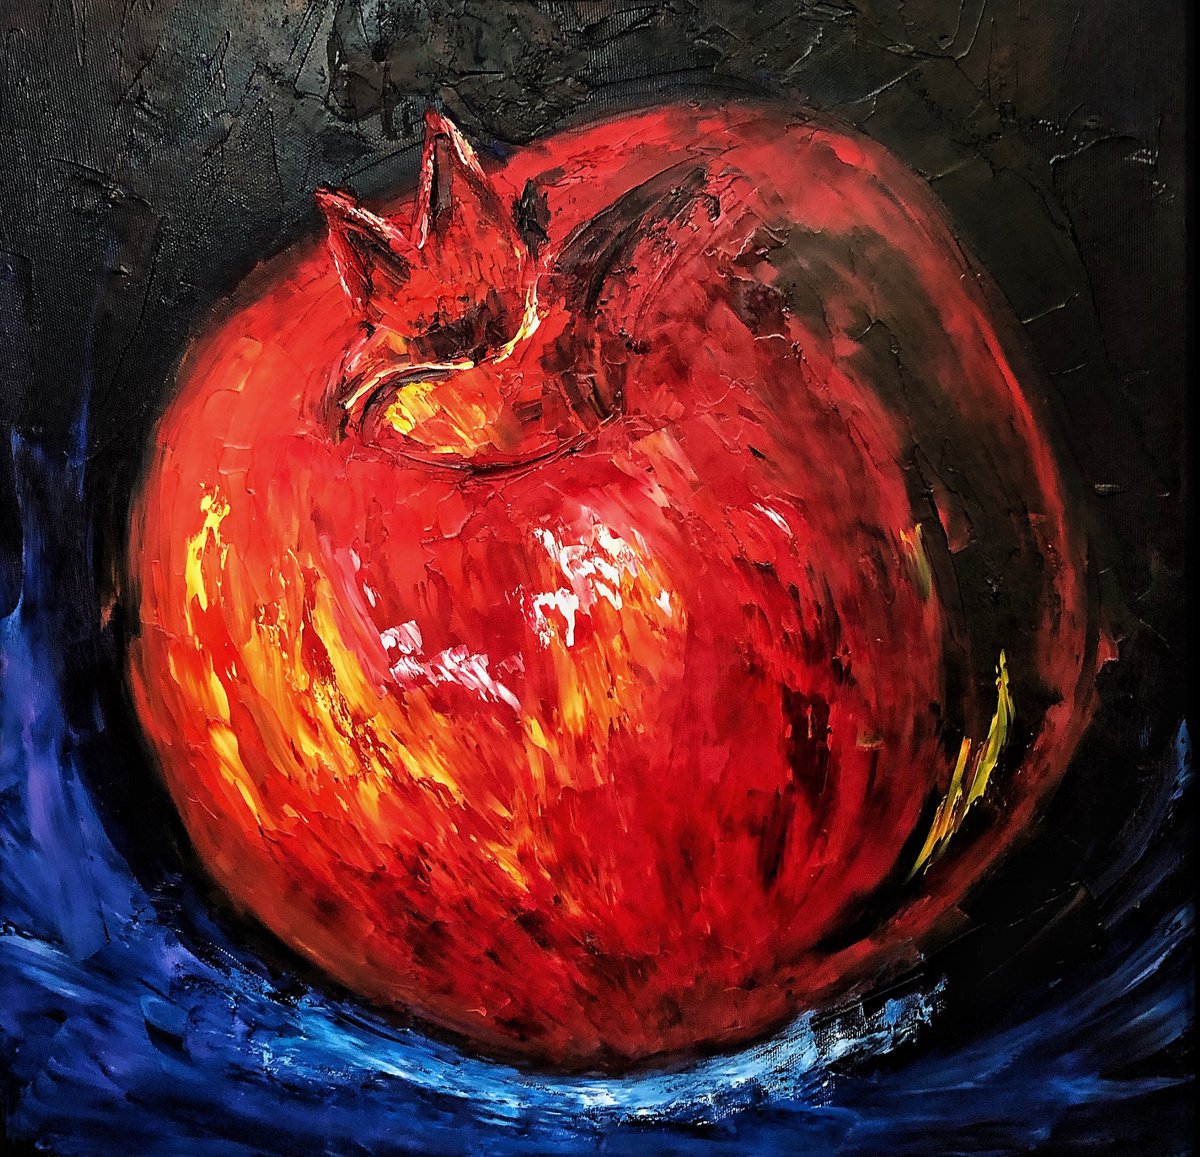 Pomegranate #1 by Anastasiia Novitskaya